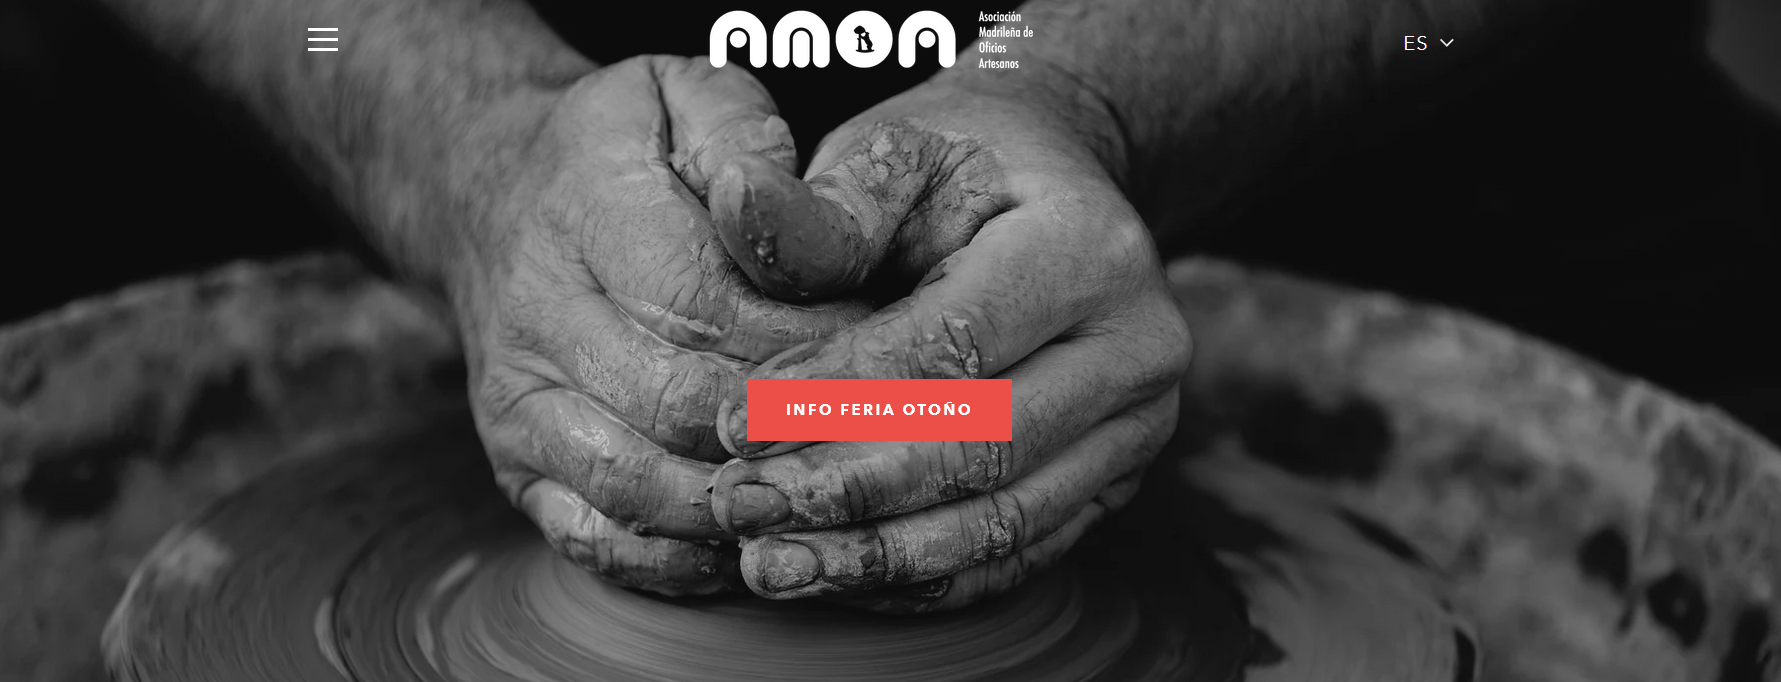 Captura de pantalla de la página web de la Asociación Madrileña de Oficios Artesanos